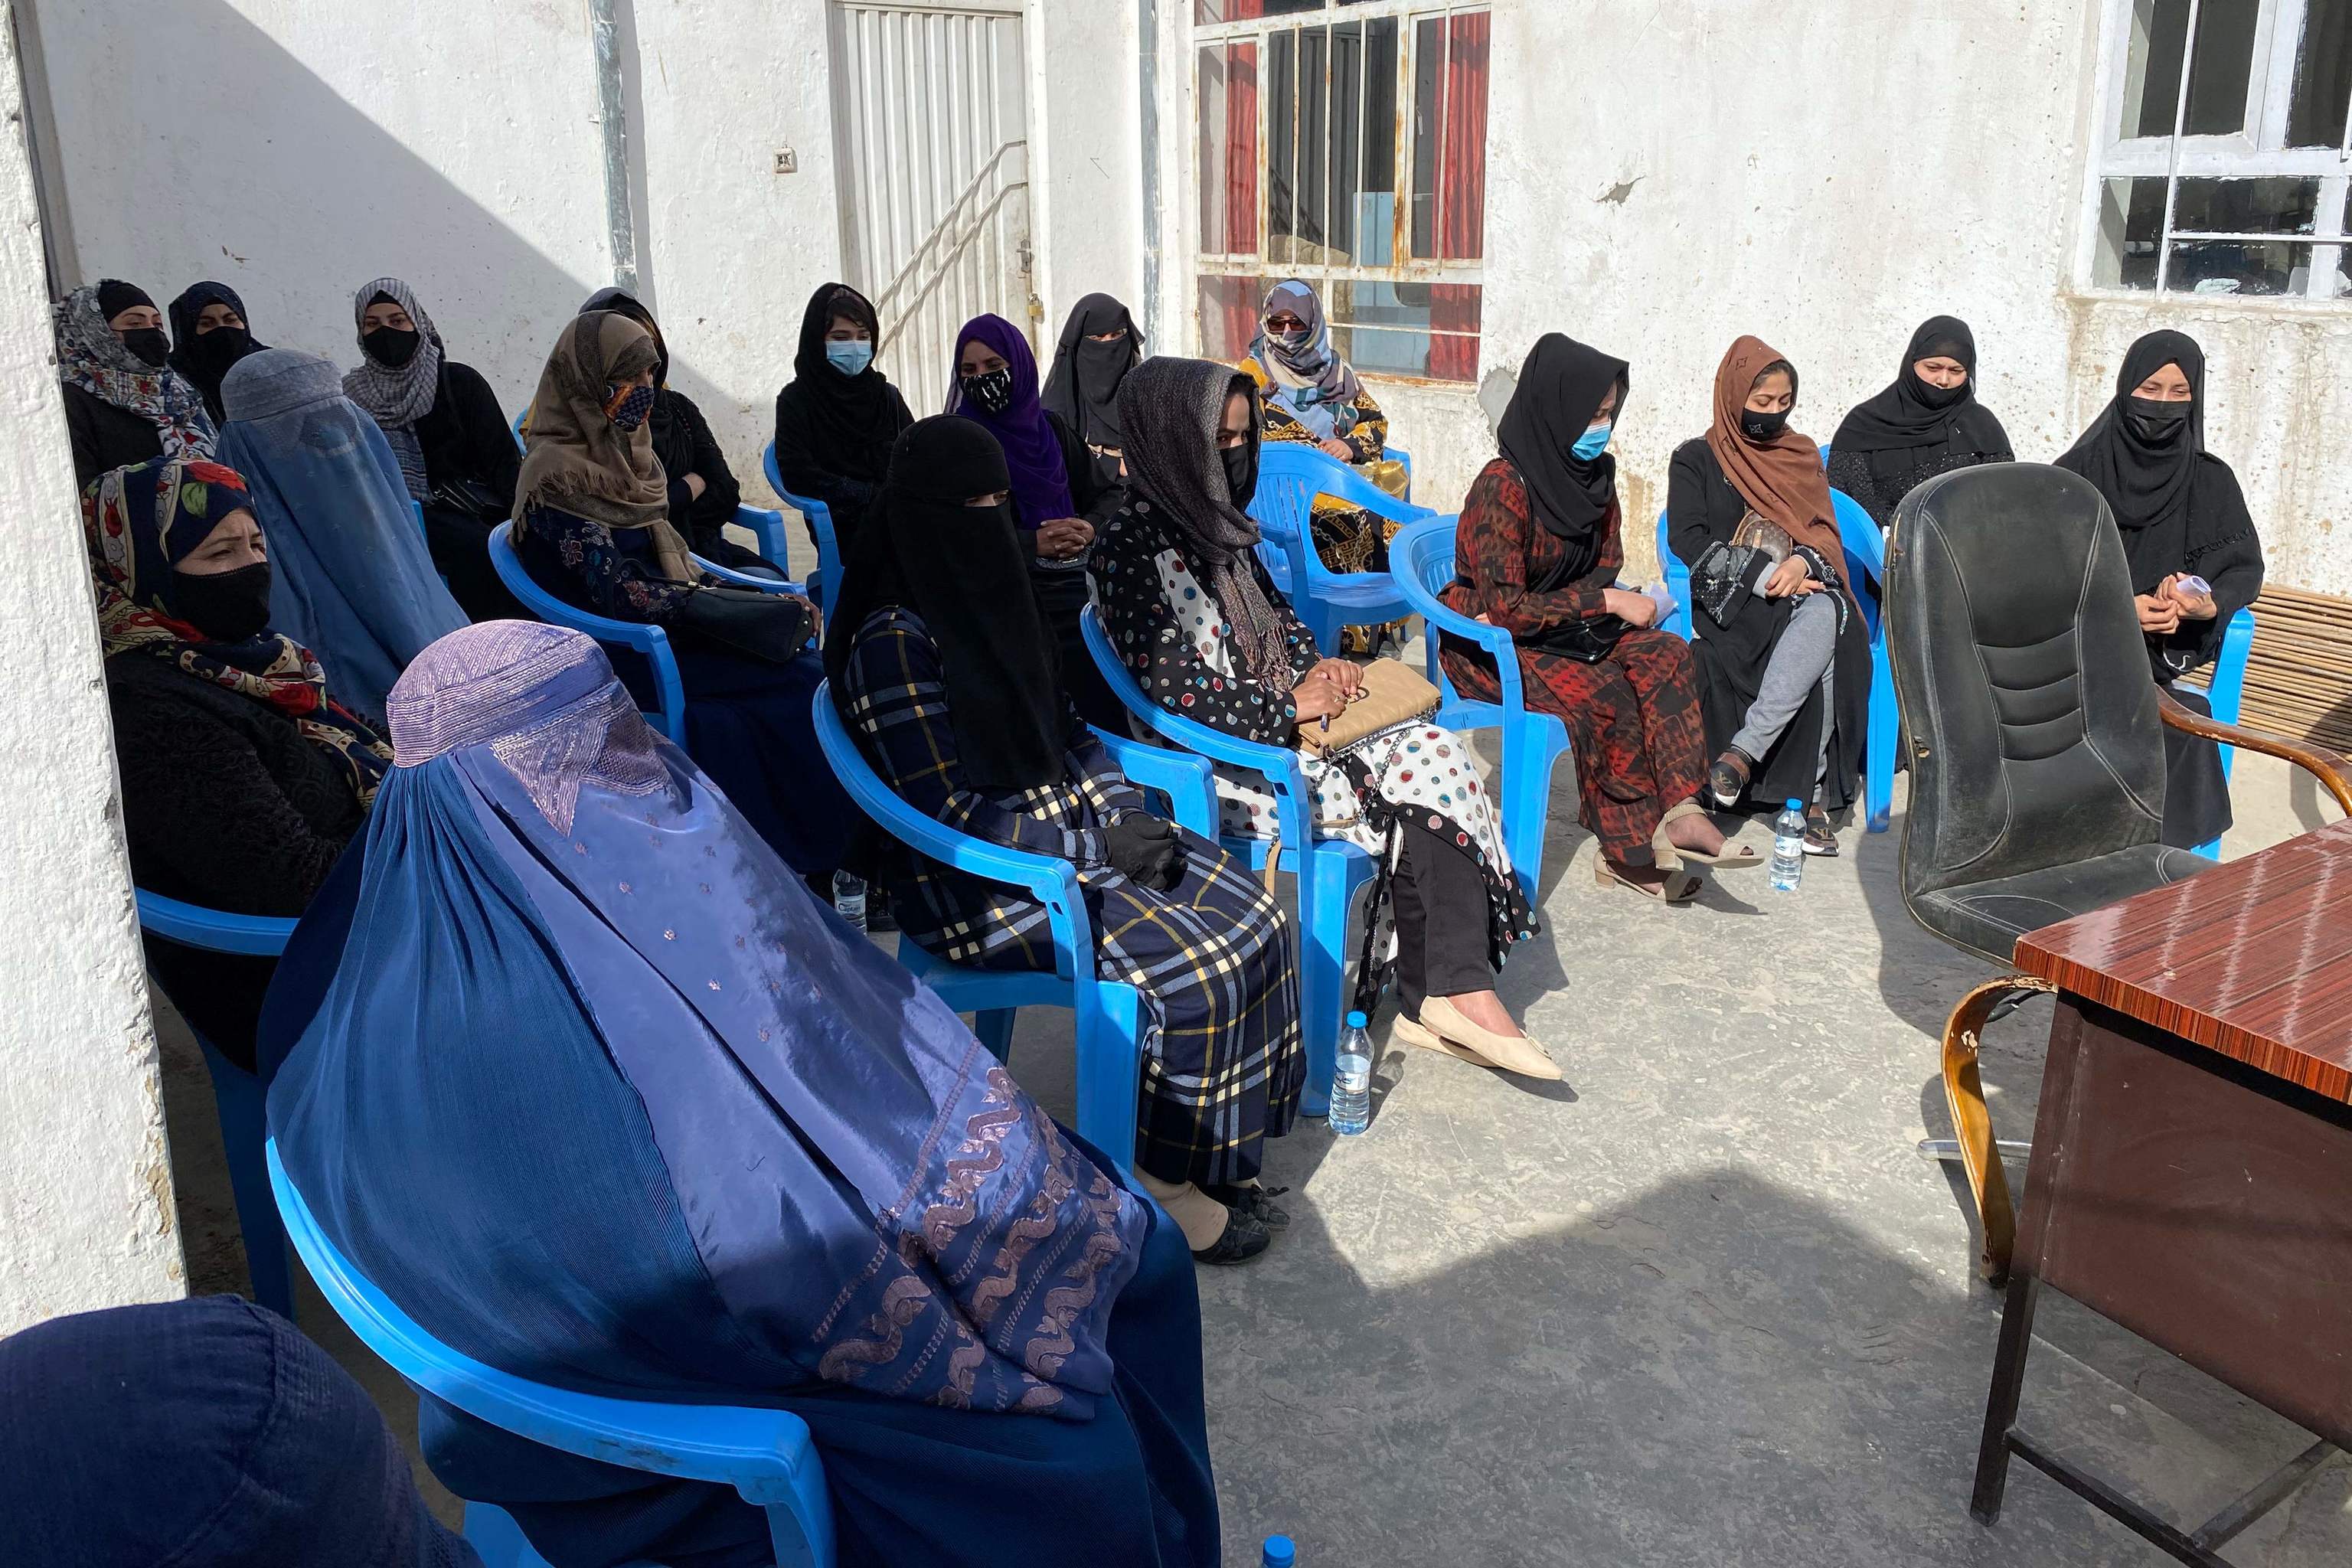 Mujeres afganas protestan por el derecho a la educación en el interior de una casa en Mazar-i-Sharif.